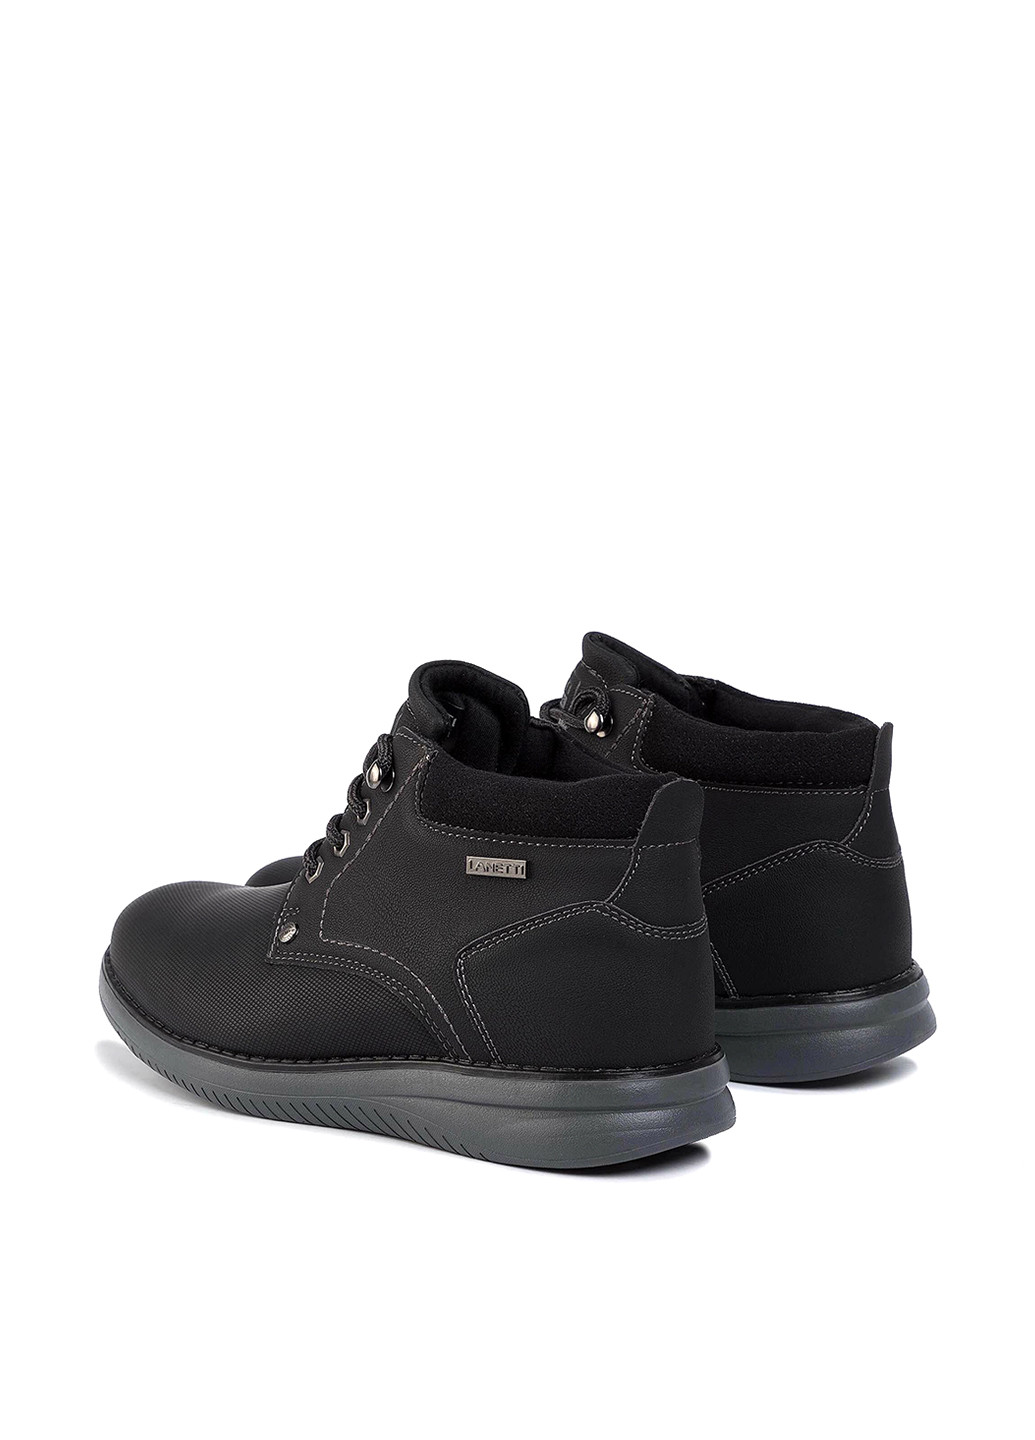 Черные осенние черевики mp07-81154-01 Lanetti